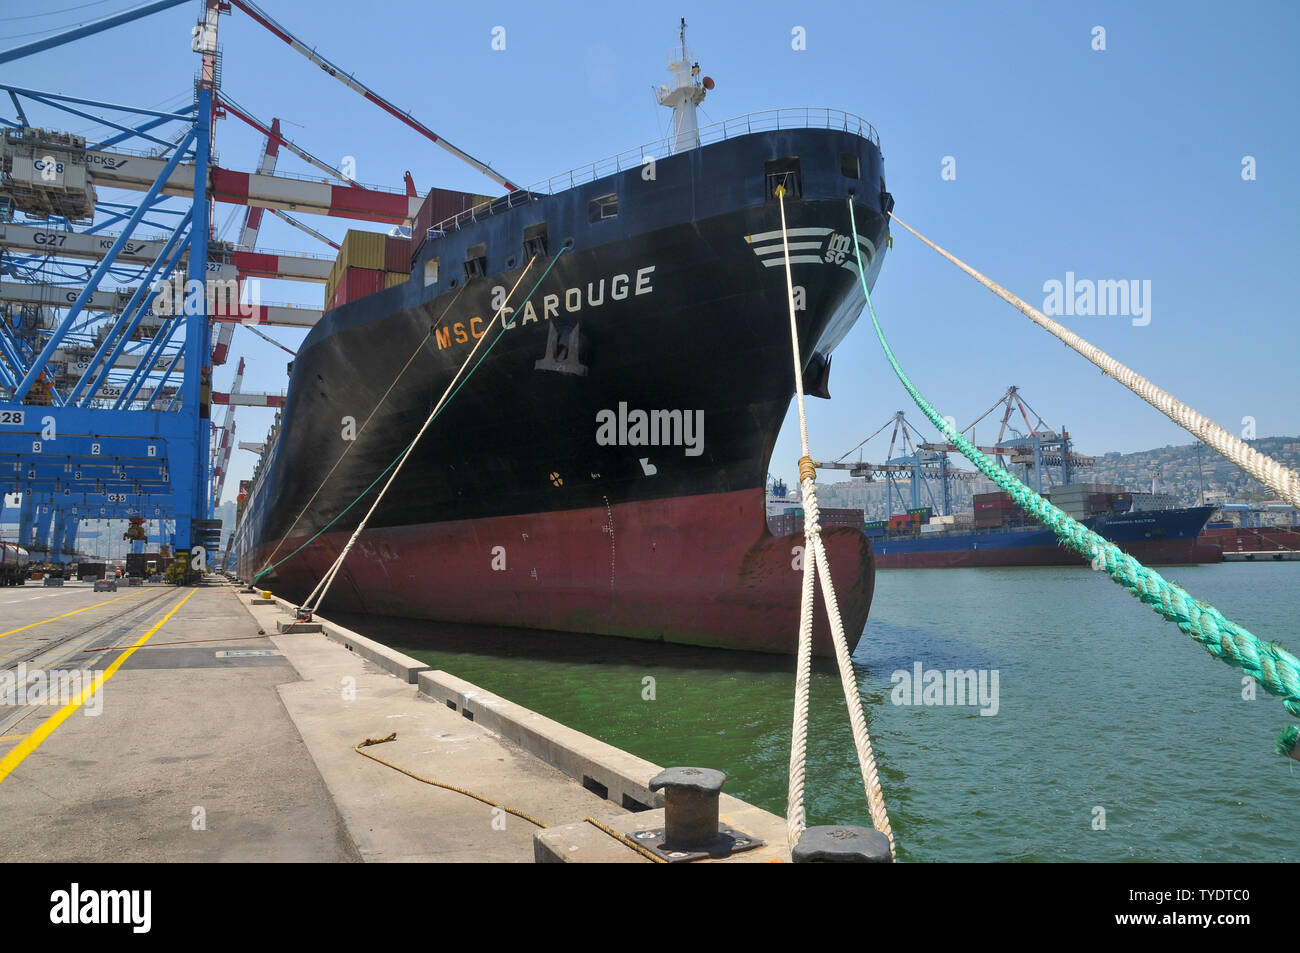 La MSC Carouge è una nave portacontainer costruite nel 2007 dalla Daewoo Mangalia Heavy Industries in Mangalia, Romania e attualmente gestiti dal Mediterraneo Foto Stock